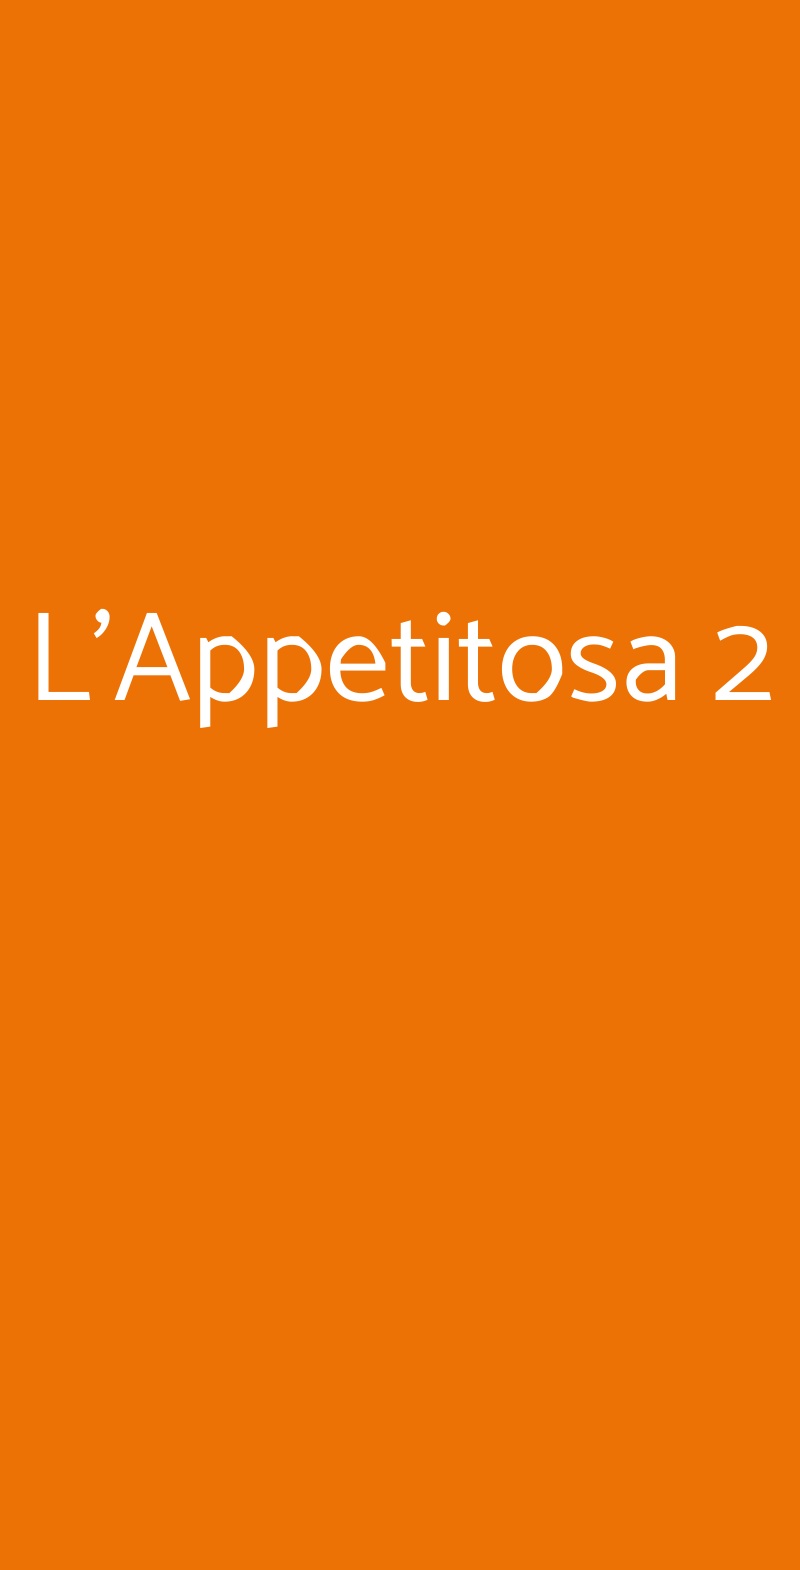 L'Appetitosa 2 Bari menù 1 pagina